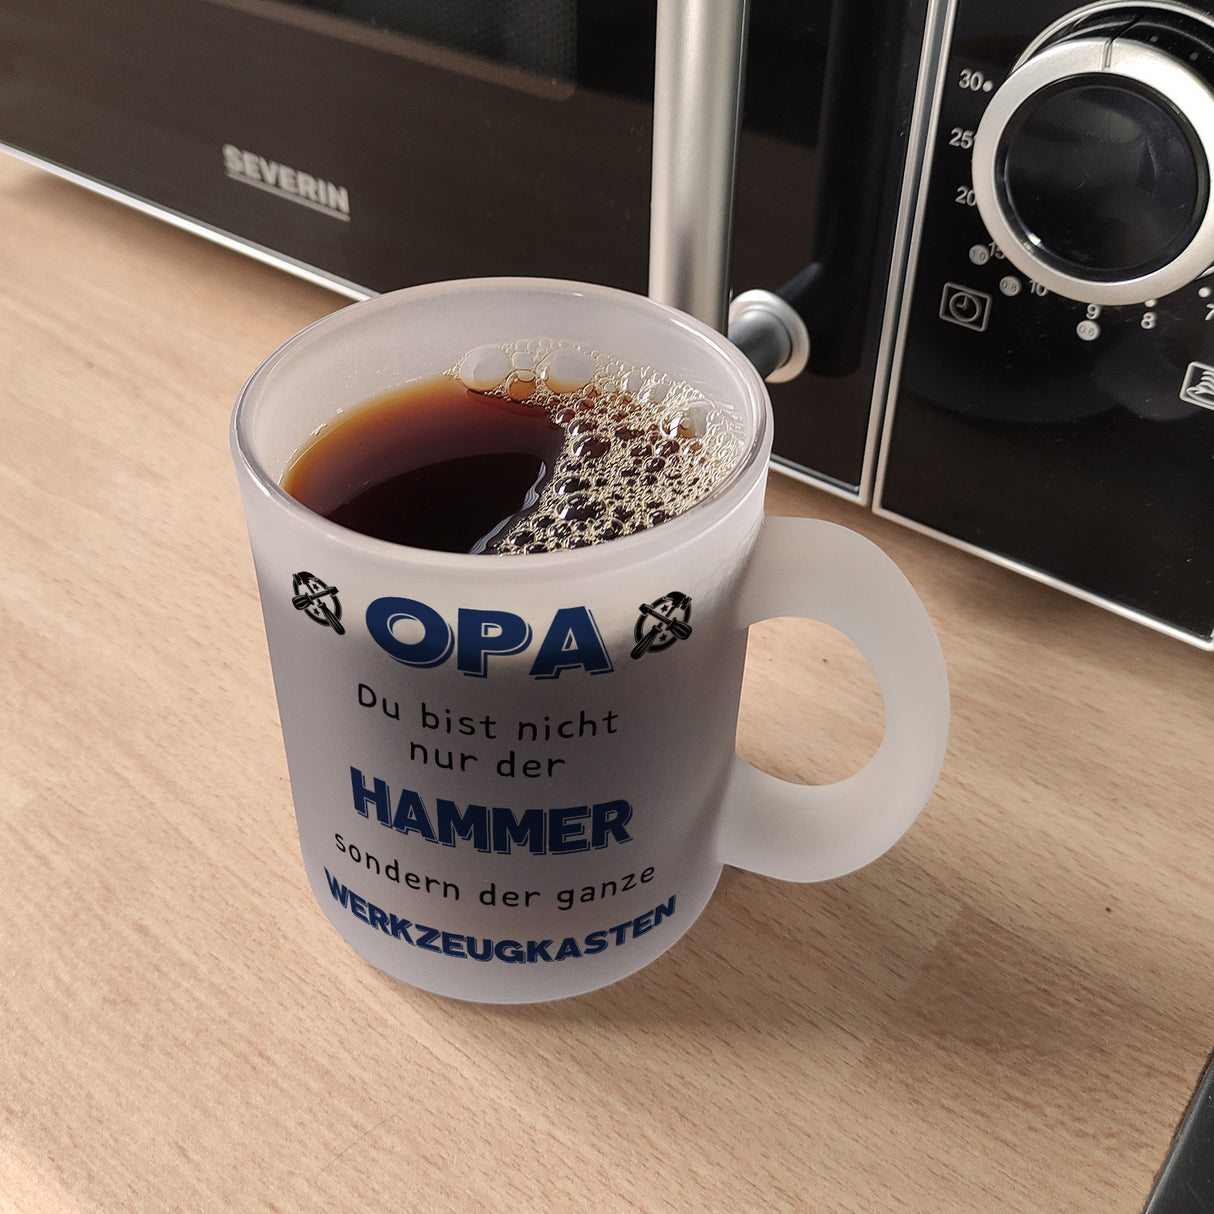 Opa Kaffeebecher mit Spruch Du bist nicht nur der Hammer